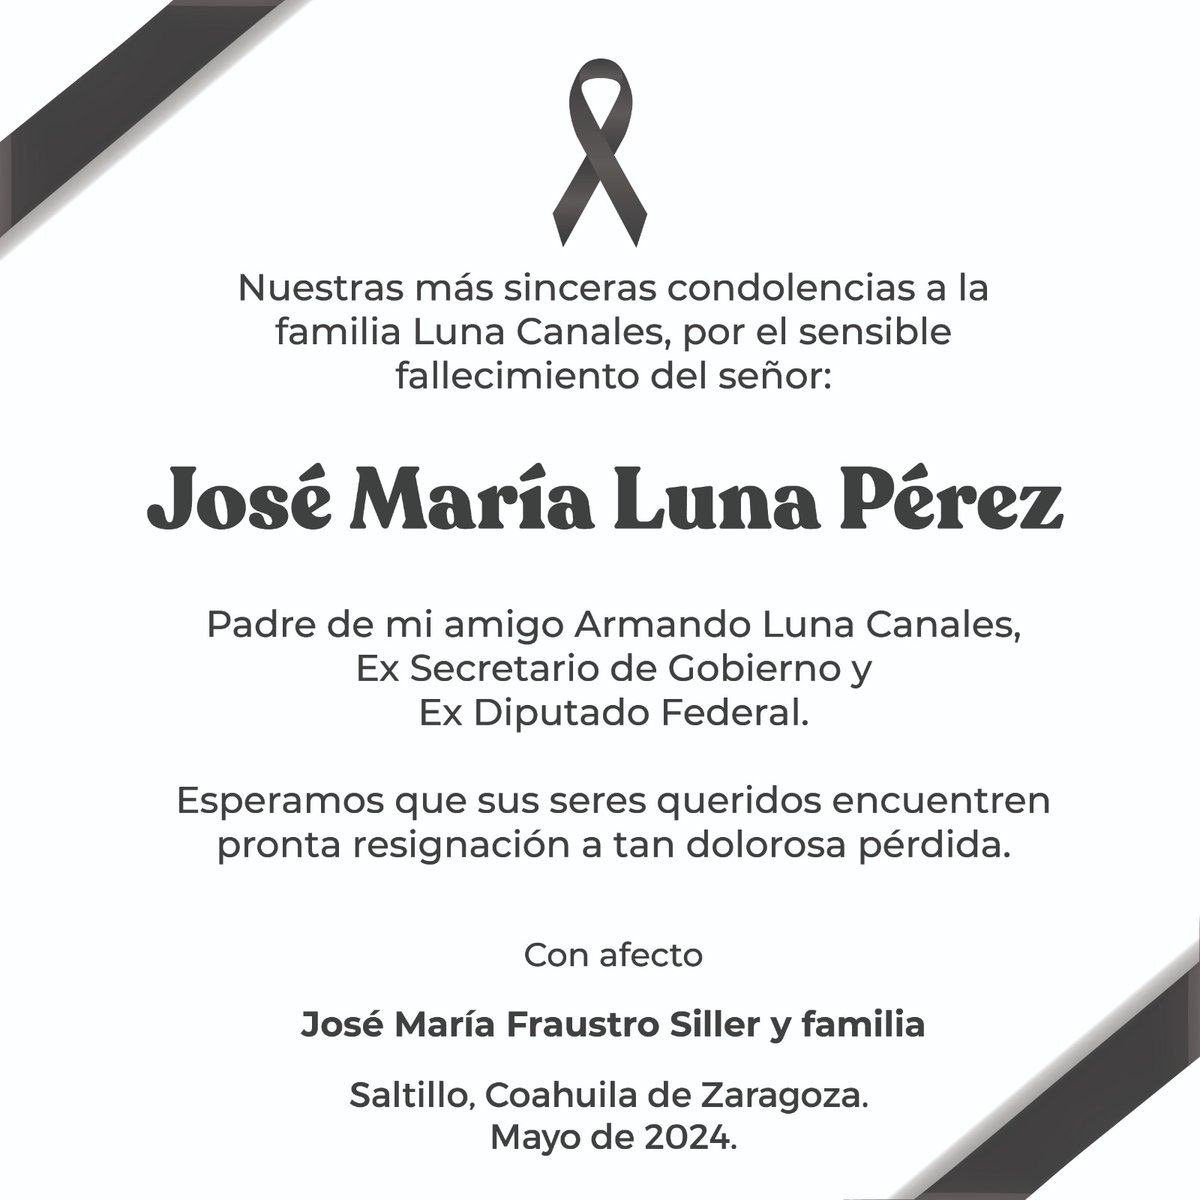 Nuestras más sentidas condolencias a la familia Luna Canales, deseamos pronta resignación ante irreparable pérdida. #QEPD